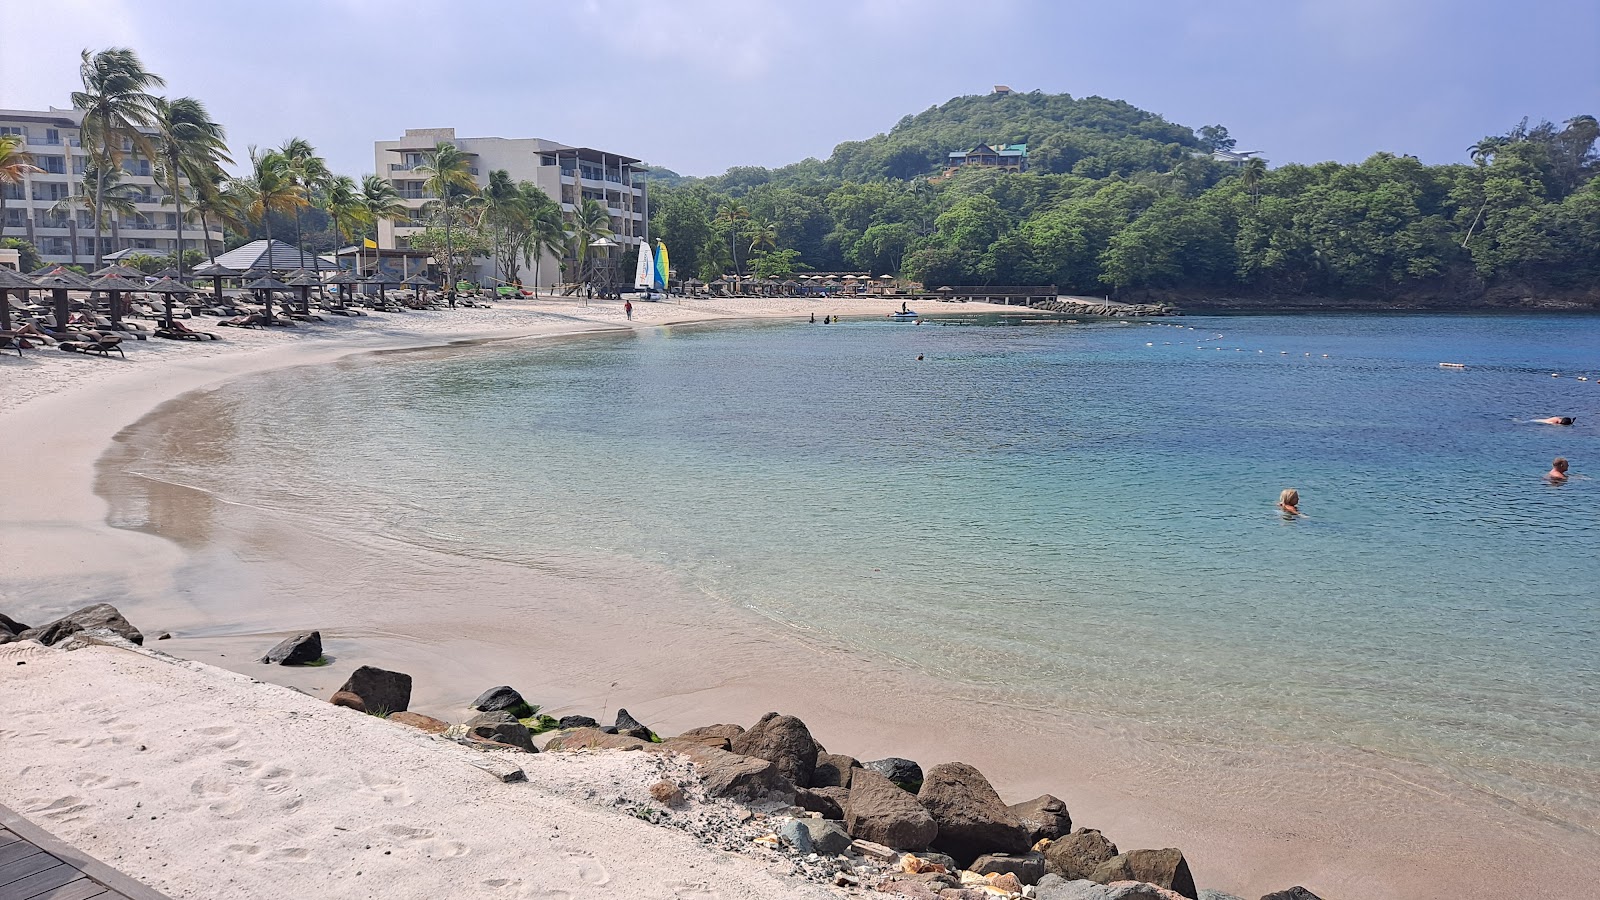 Foto de Saint Lucia beach com areia fina branca superfície